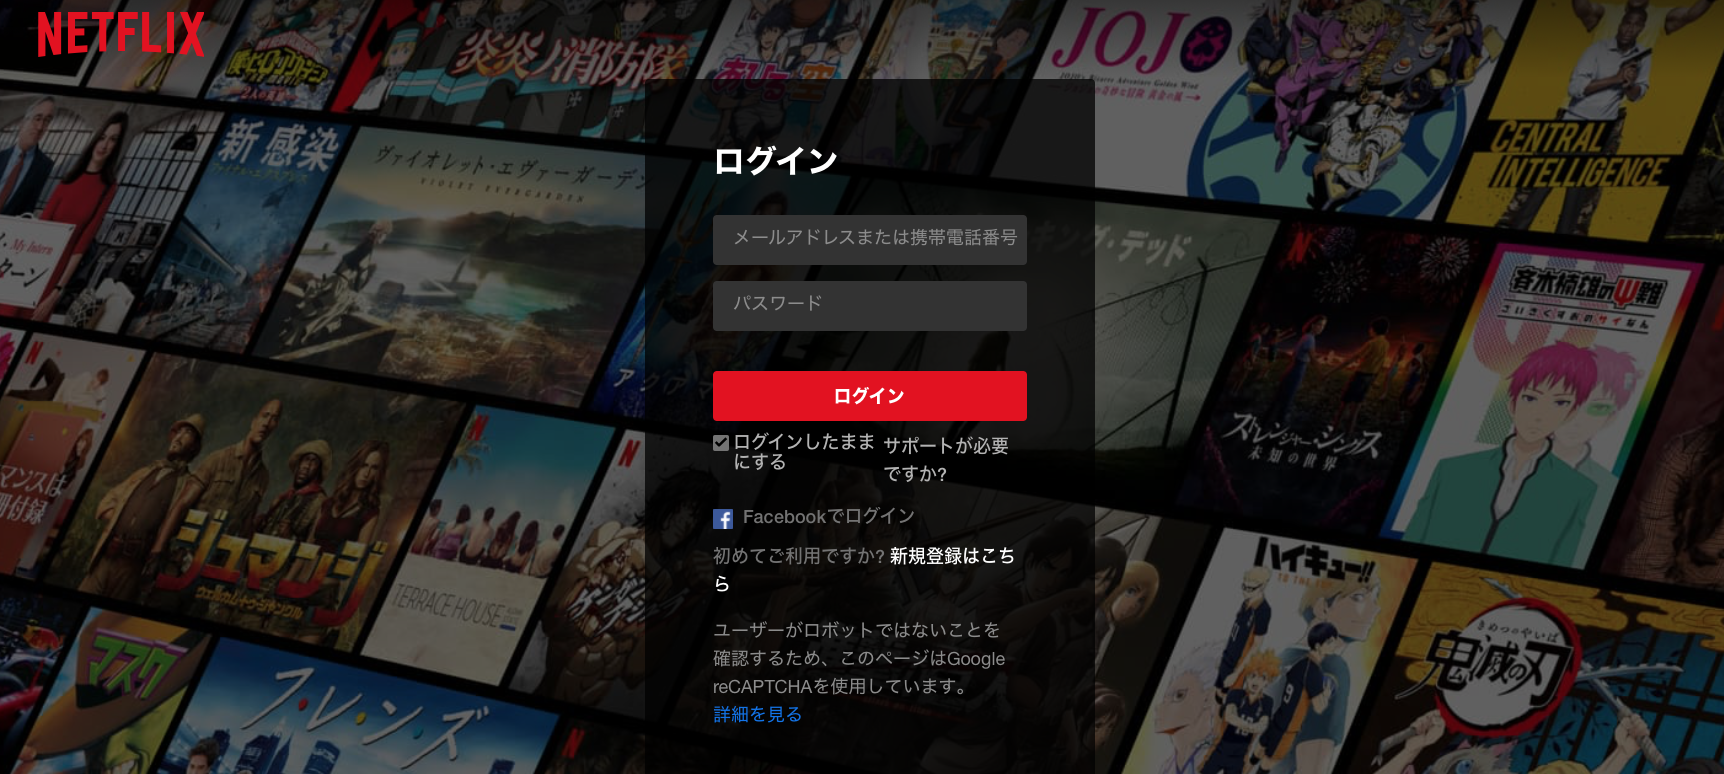 Netflix ネットフリックス プリペイドカードを徹底リサーチ 完全版 Torisetsu